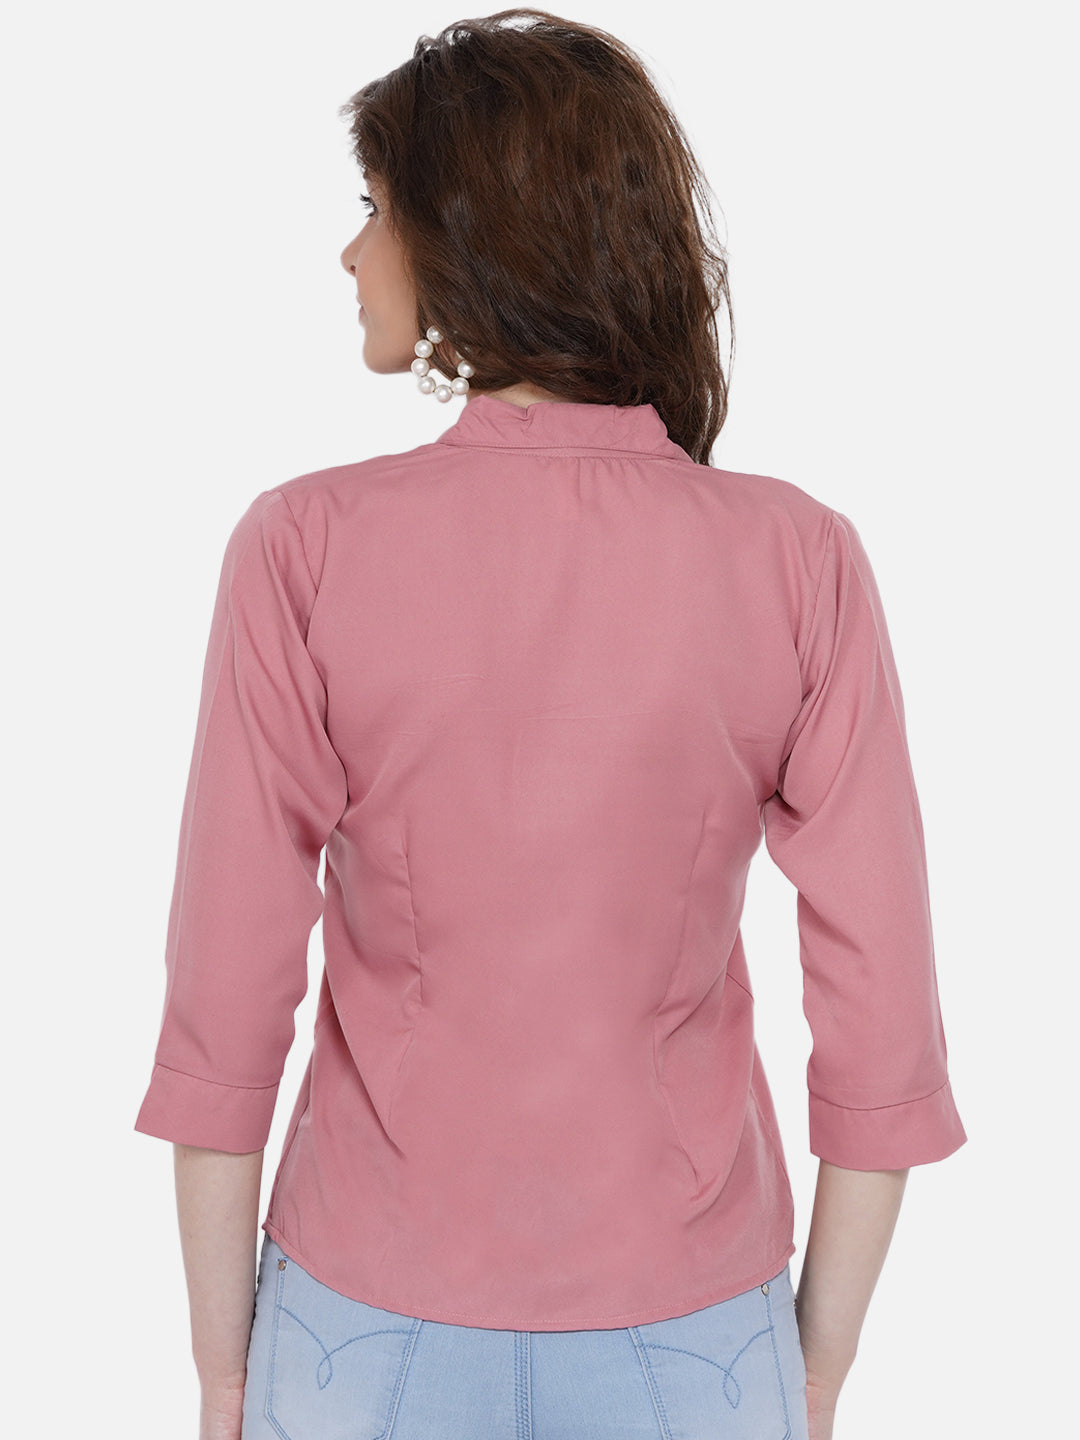 Women's Peach-Coloured Casual Shirt - Wahe-Noor